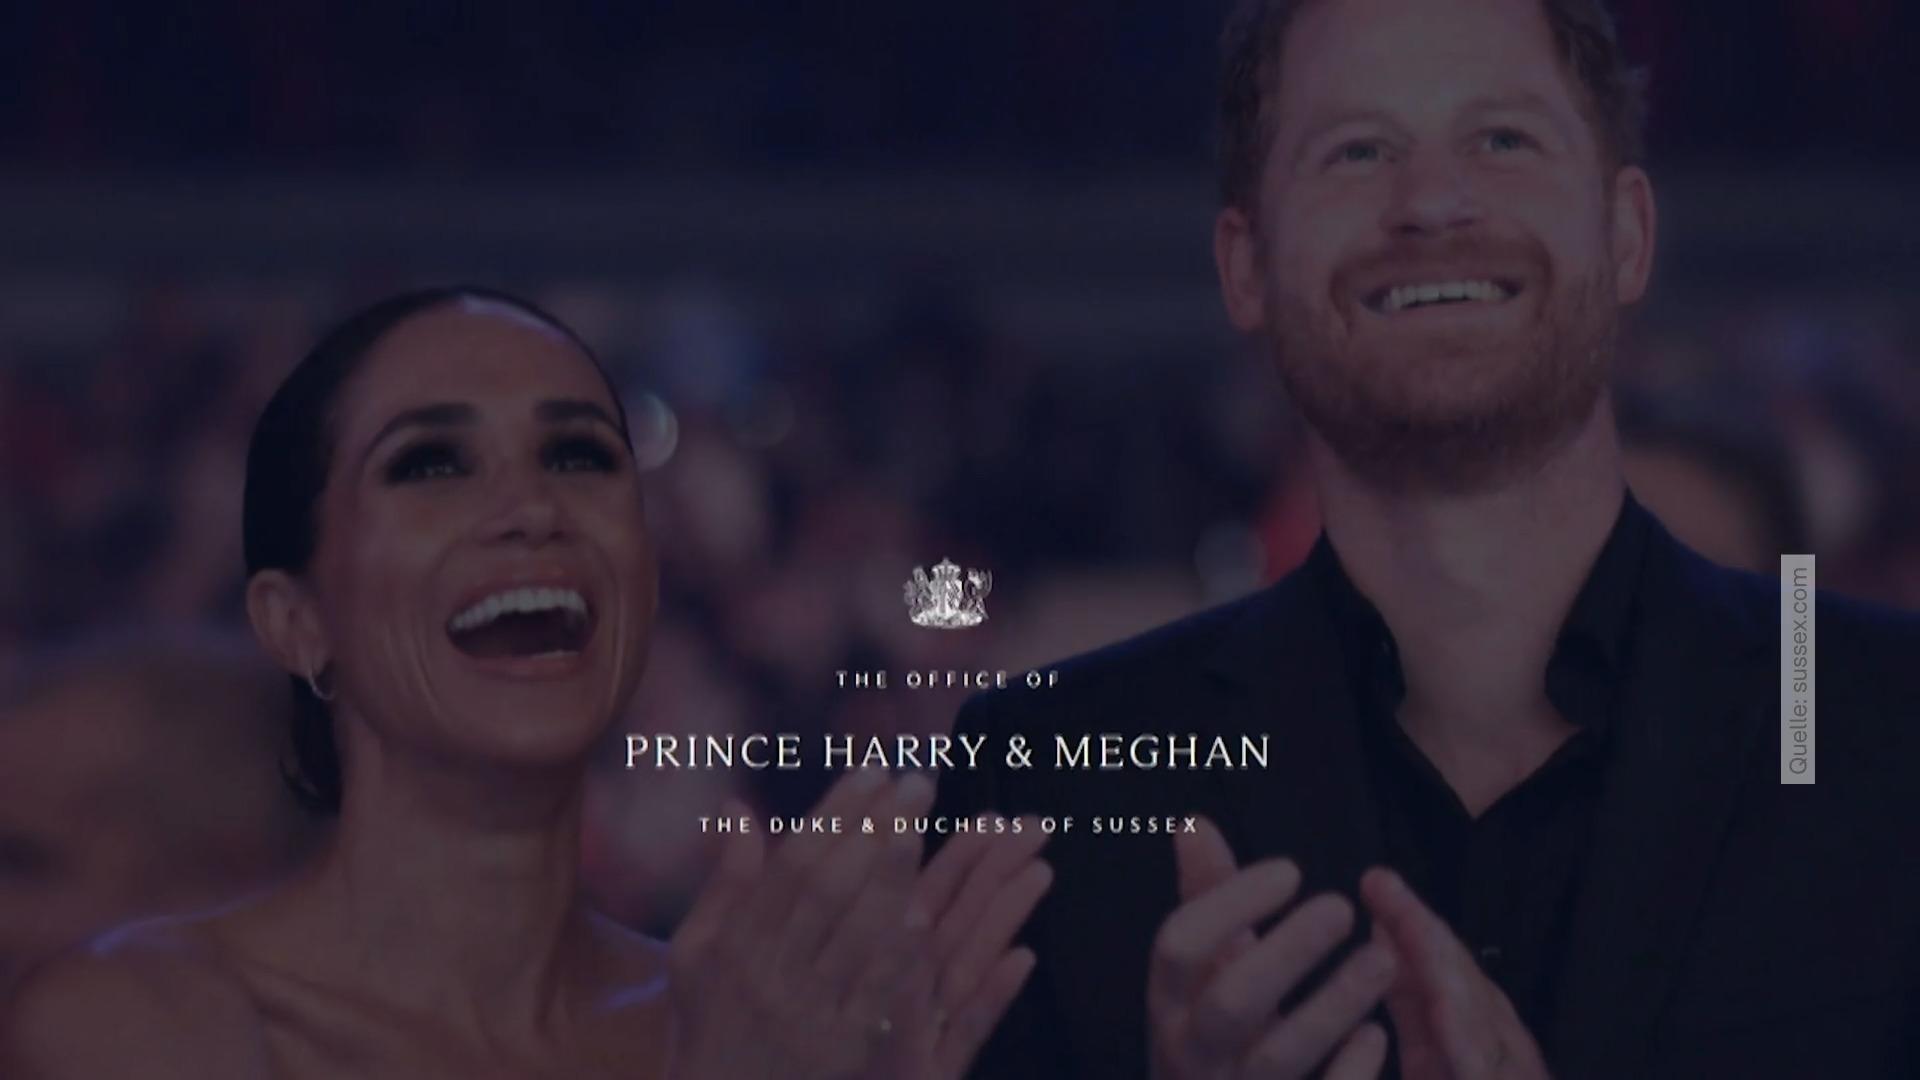 Książę Harry i księżna Meghan promują się, gdy znana jest diagnoza raka króla Karola